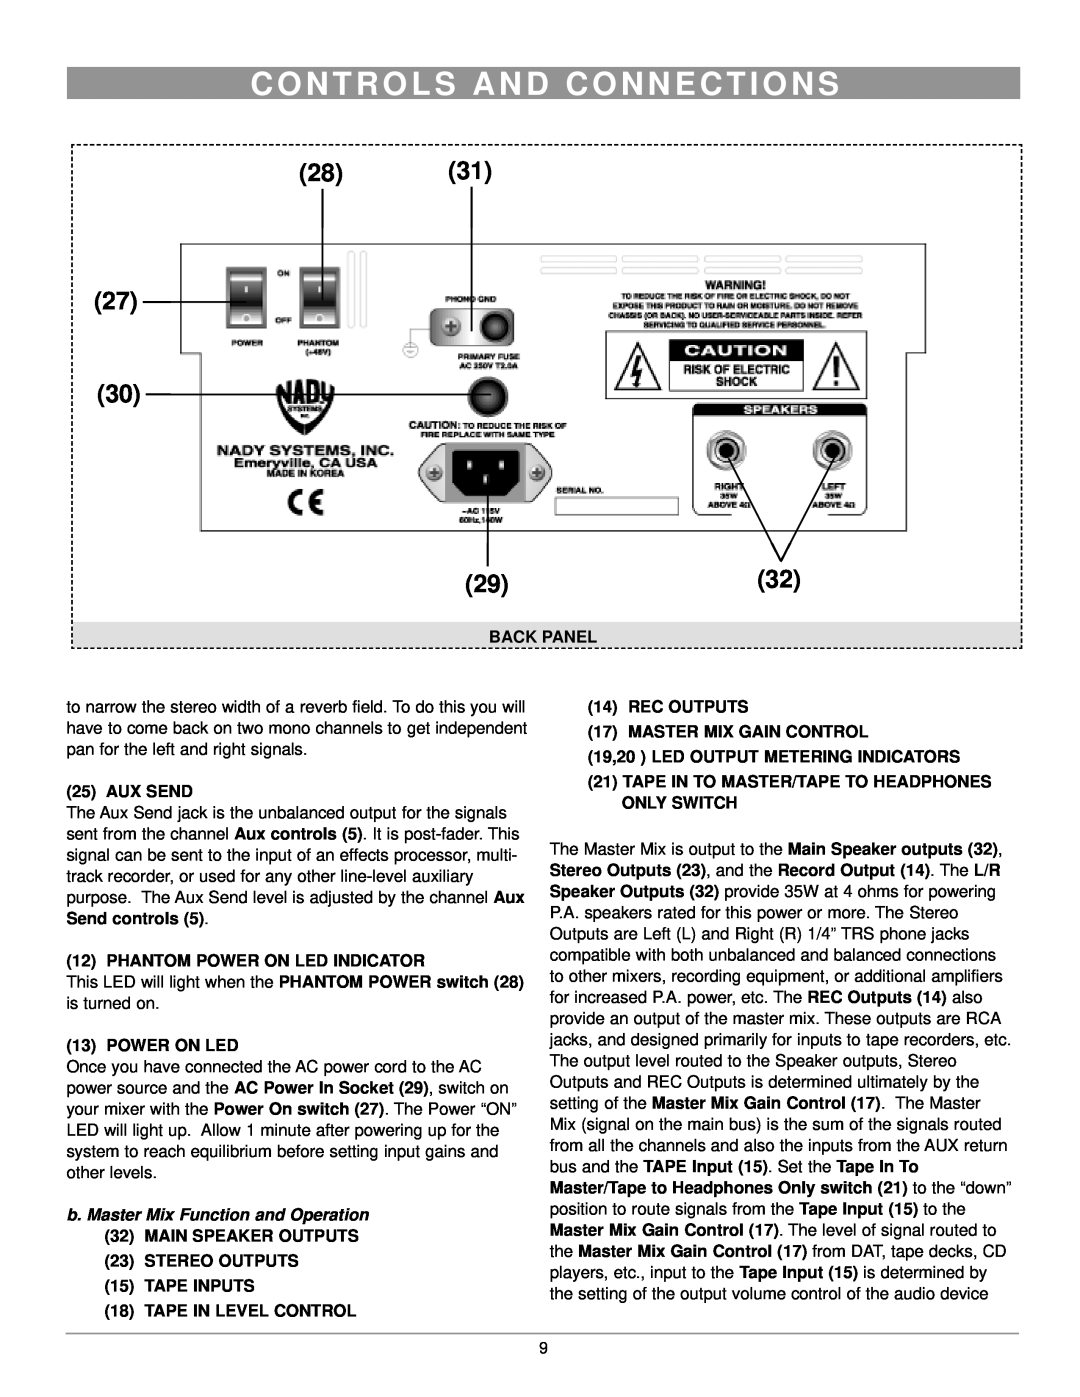 Nady Systems SPM-835 C O N T R O L S A N D C O N N E C T I O N S, Back Panel, Aux Send, Phantom Power On Led Indicator 